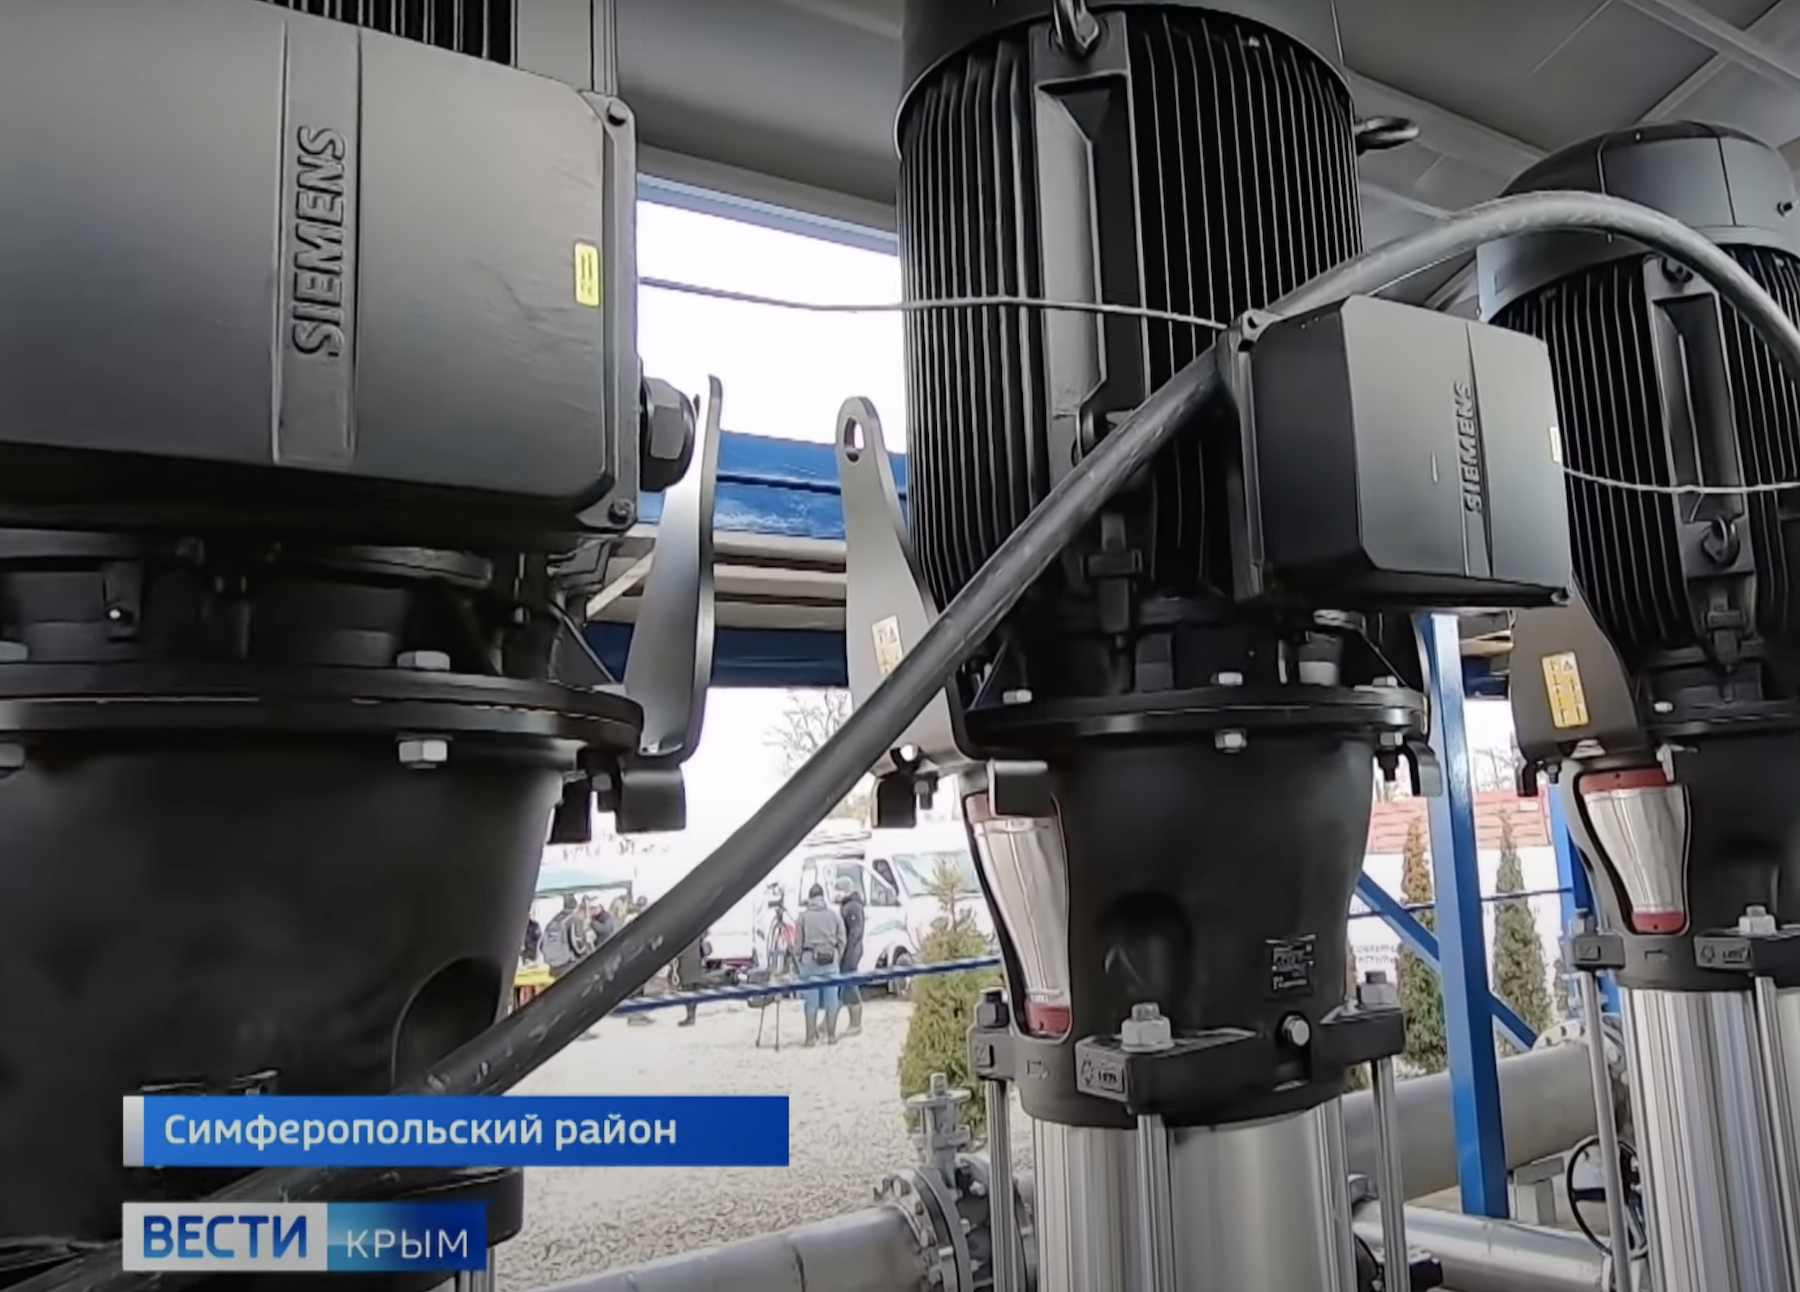 Pompy Siemensa w instalacji poboru wody fot. Mariusz Marszałkowski/Rossija